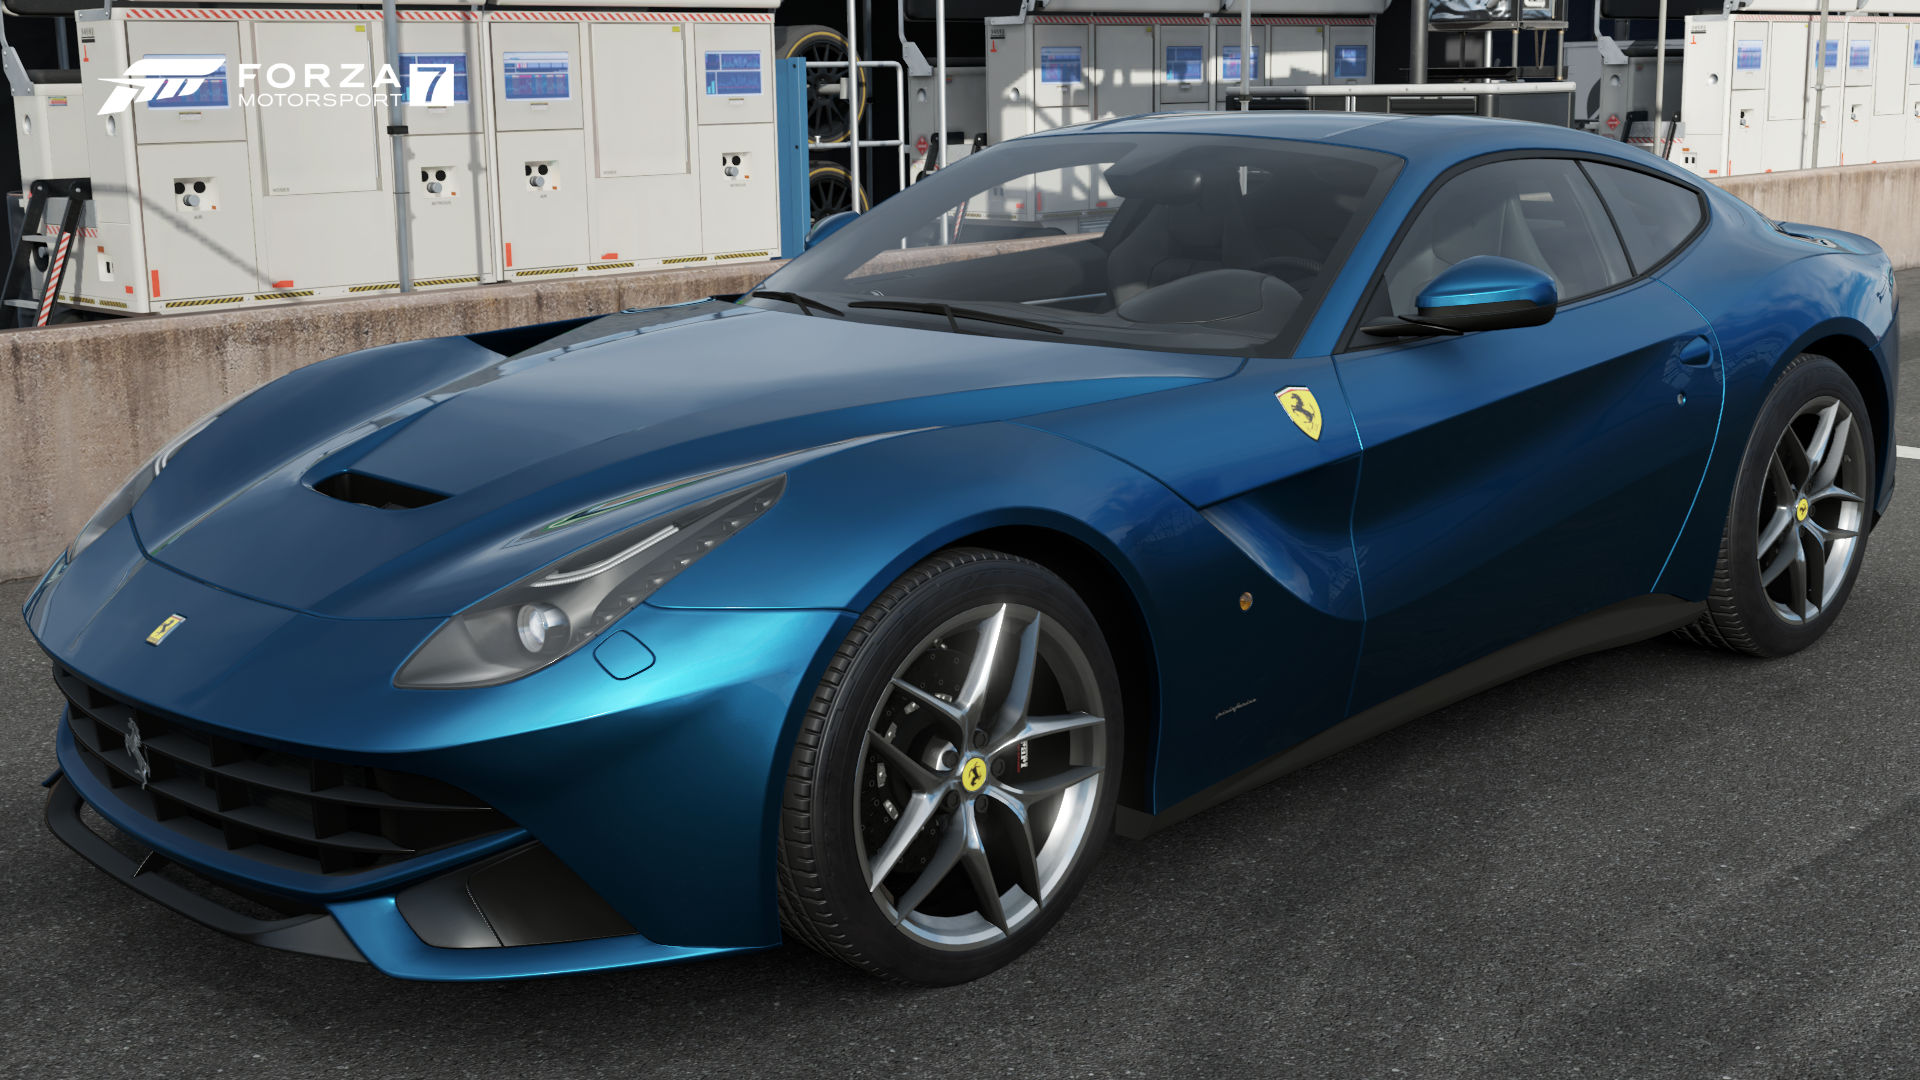 Ferrari F12berlinetta | Forza Motorsport Wiki | FANDOM powered by Wikia